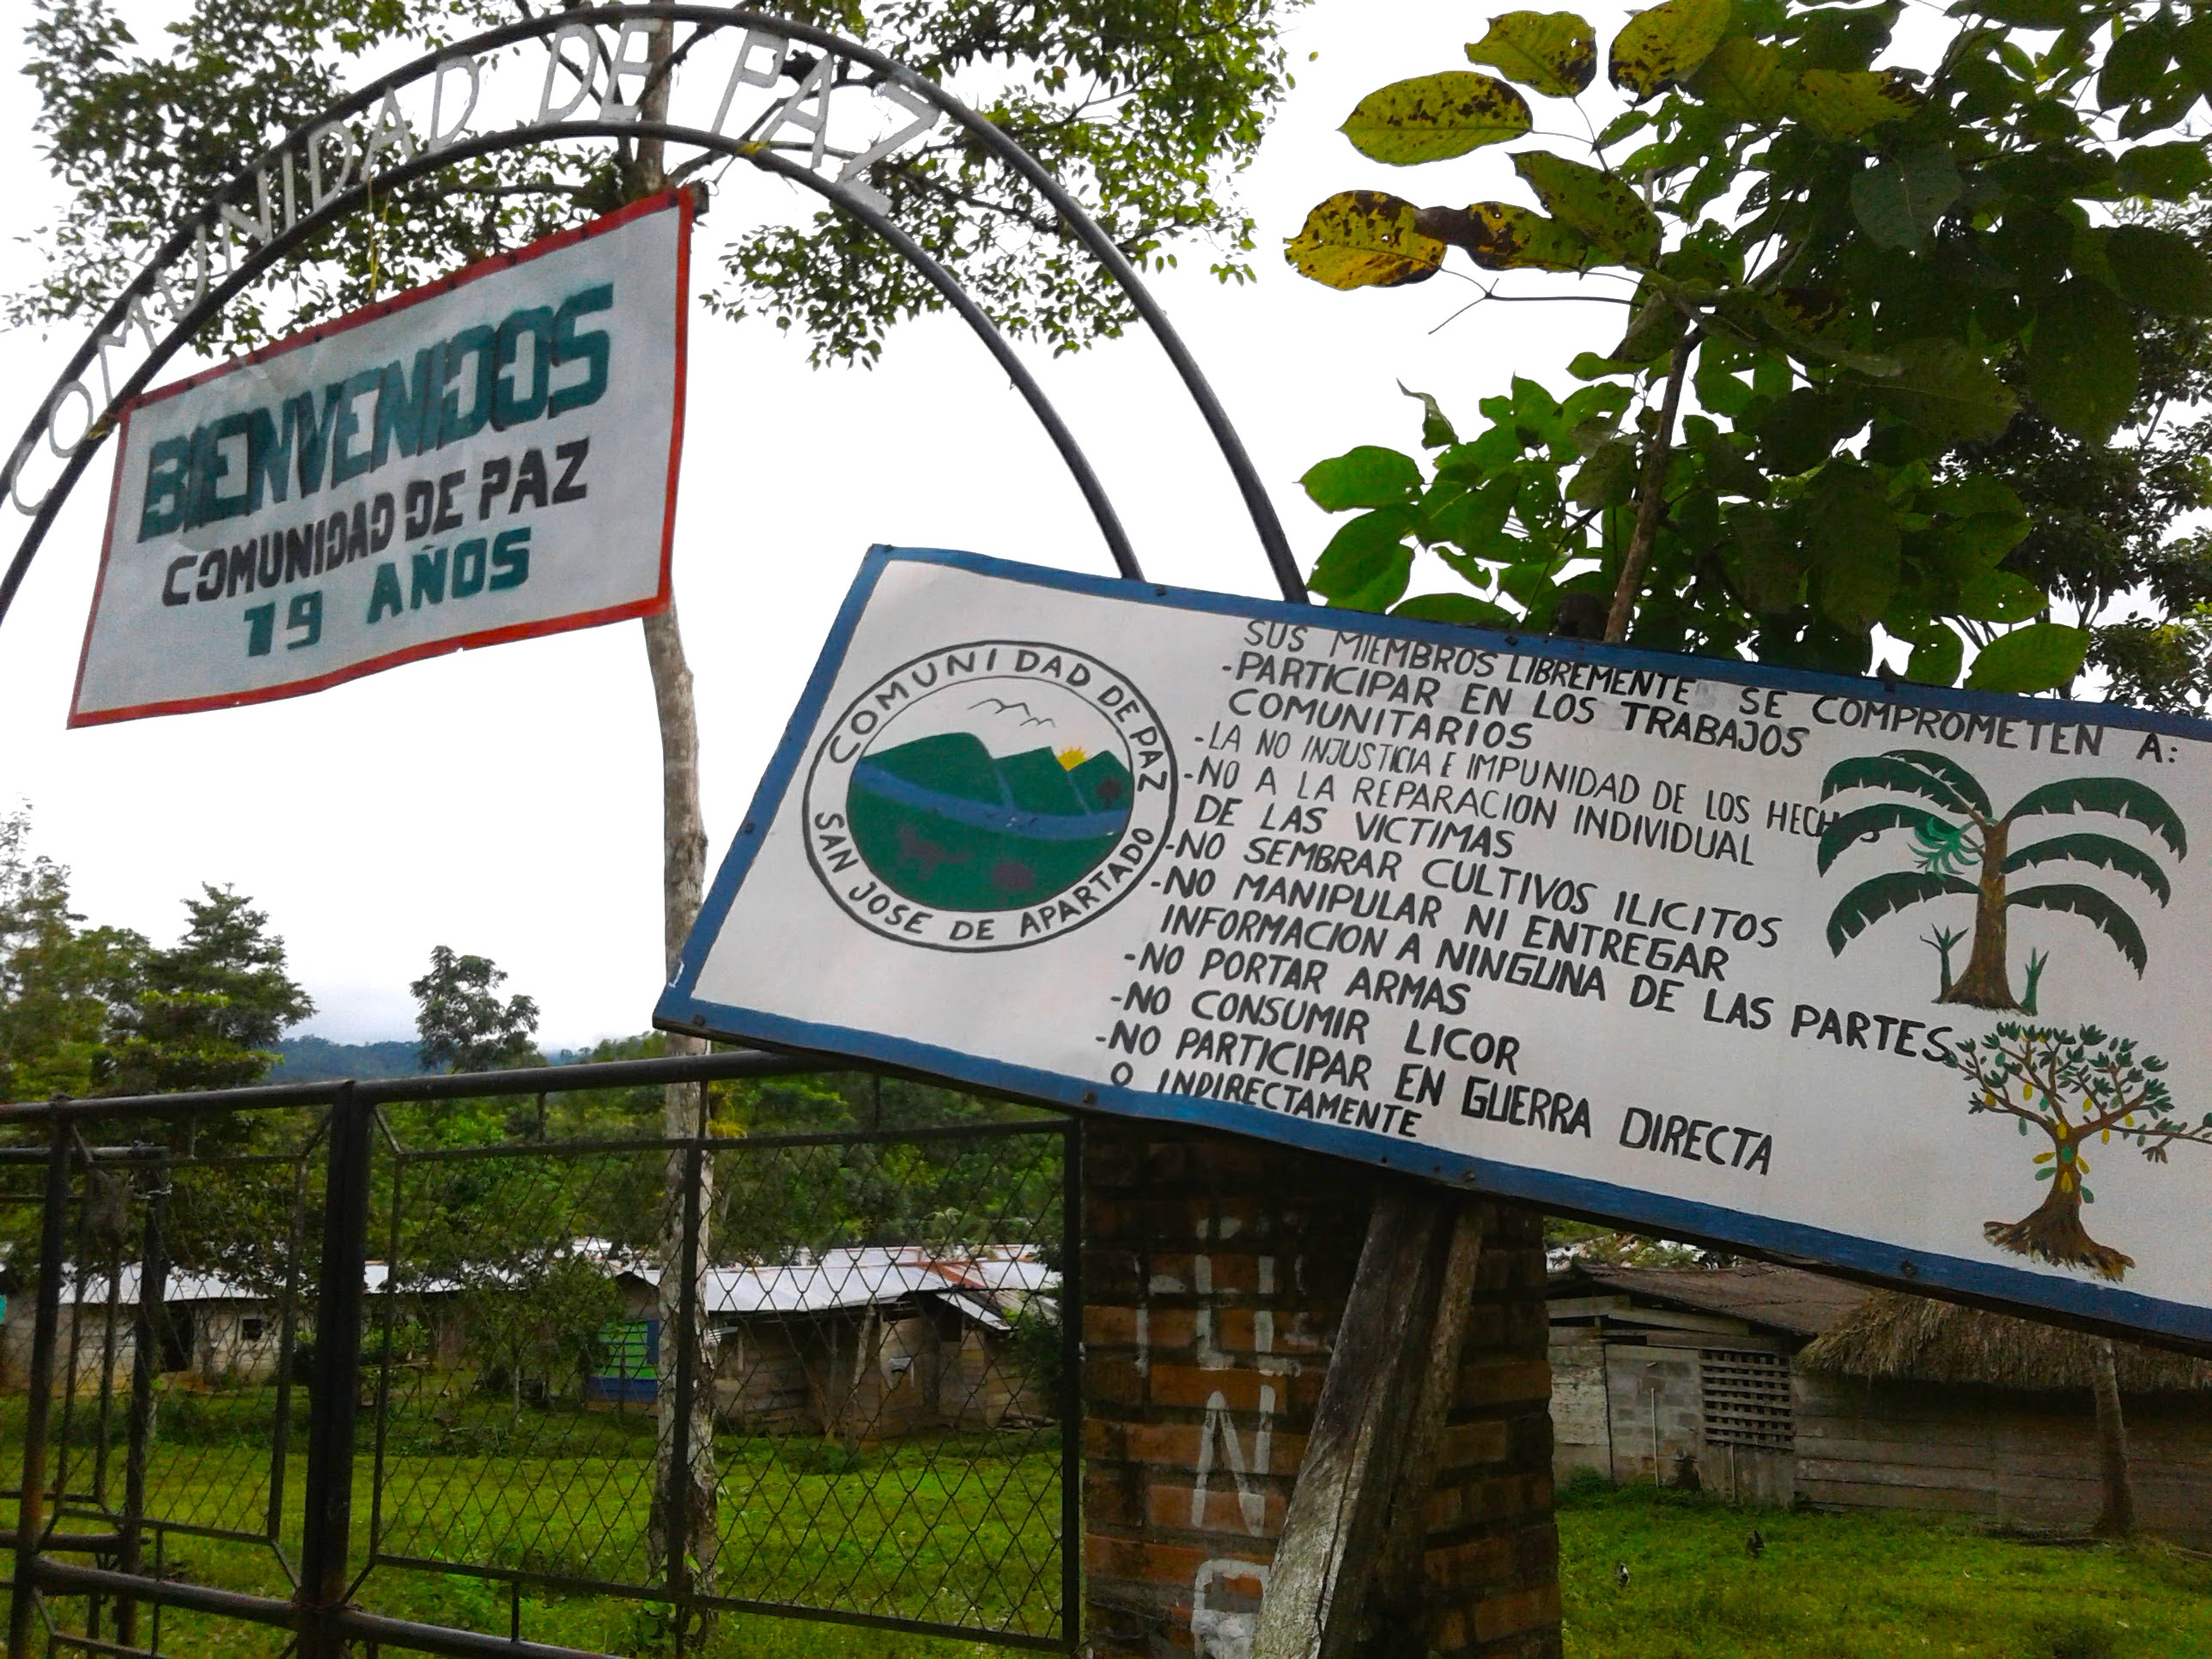 ¿Por qué resiste la comunidad de paz de San José de Apartadó? - Colombia Plural